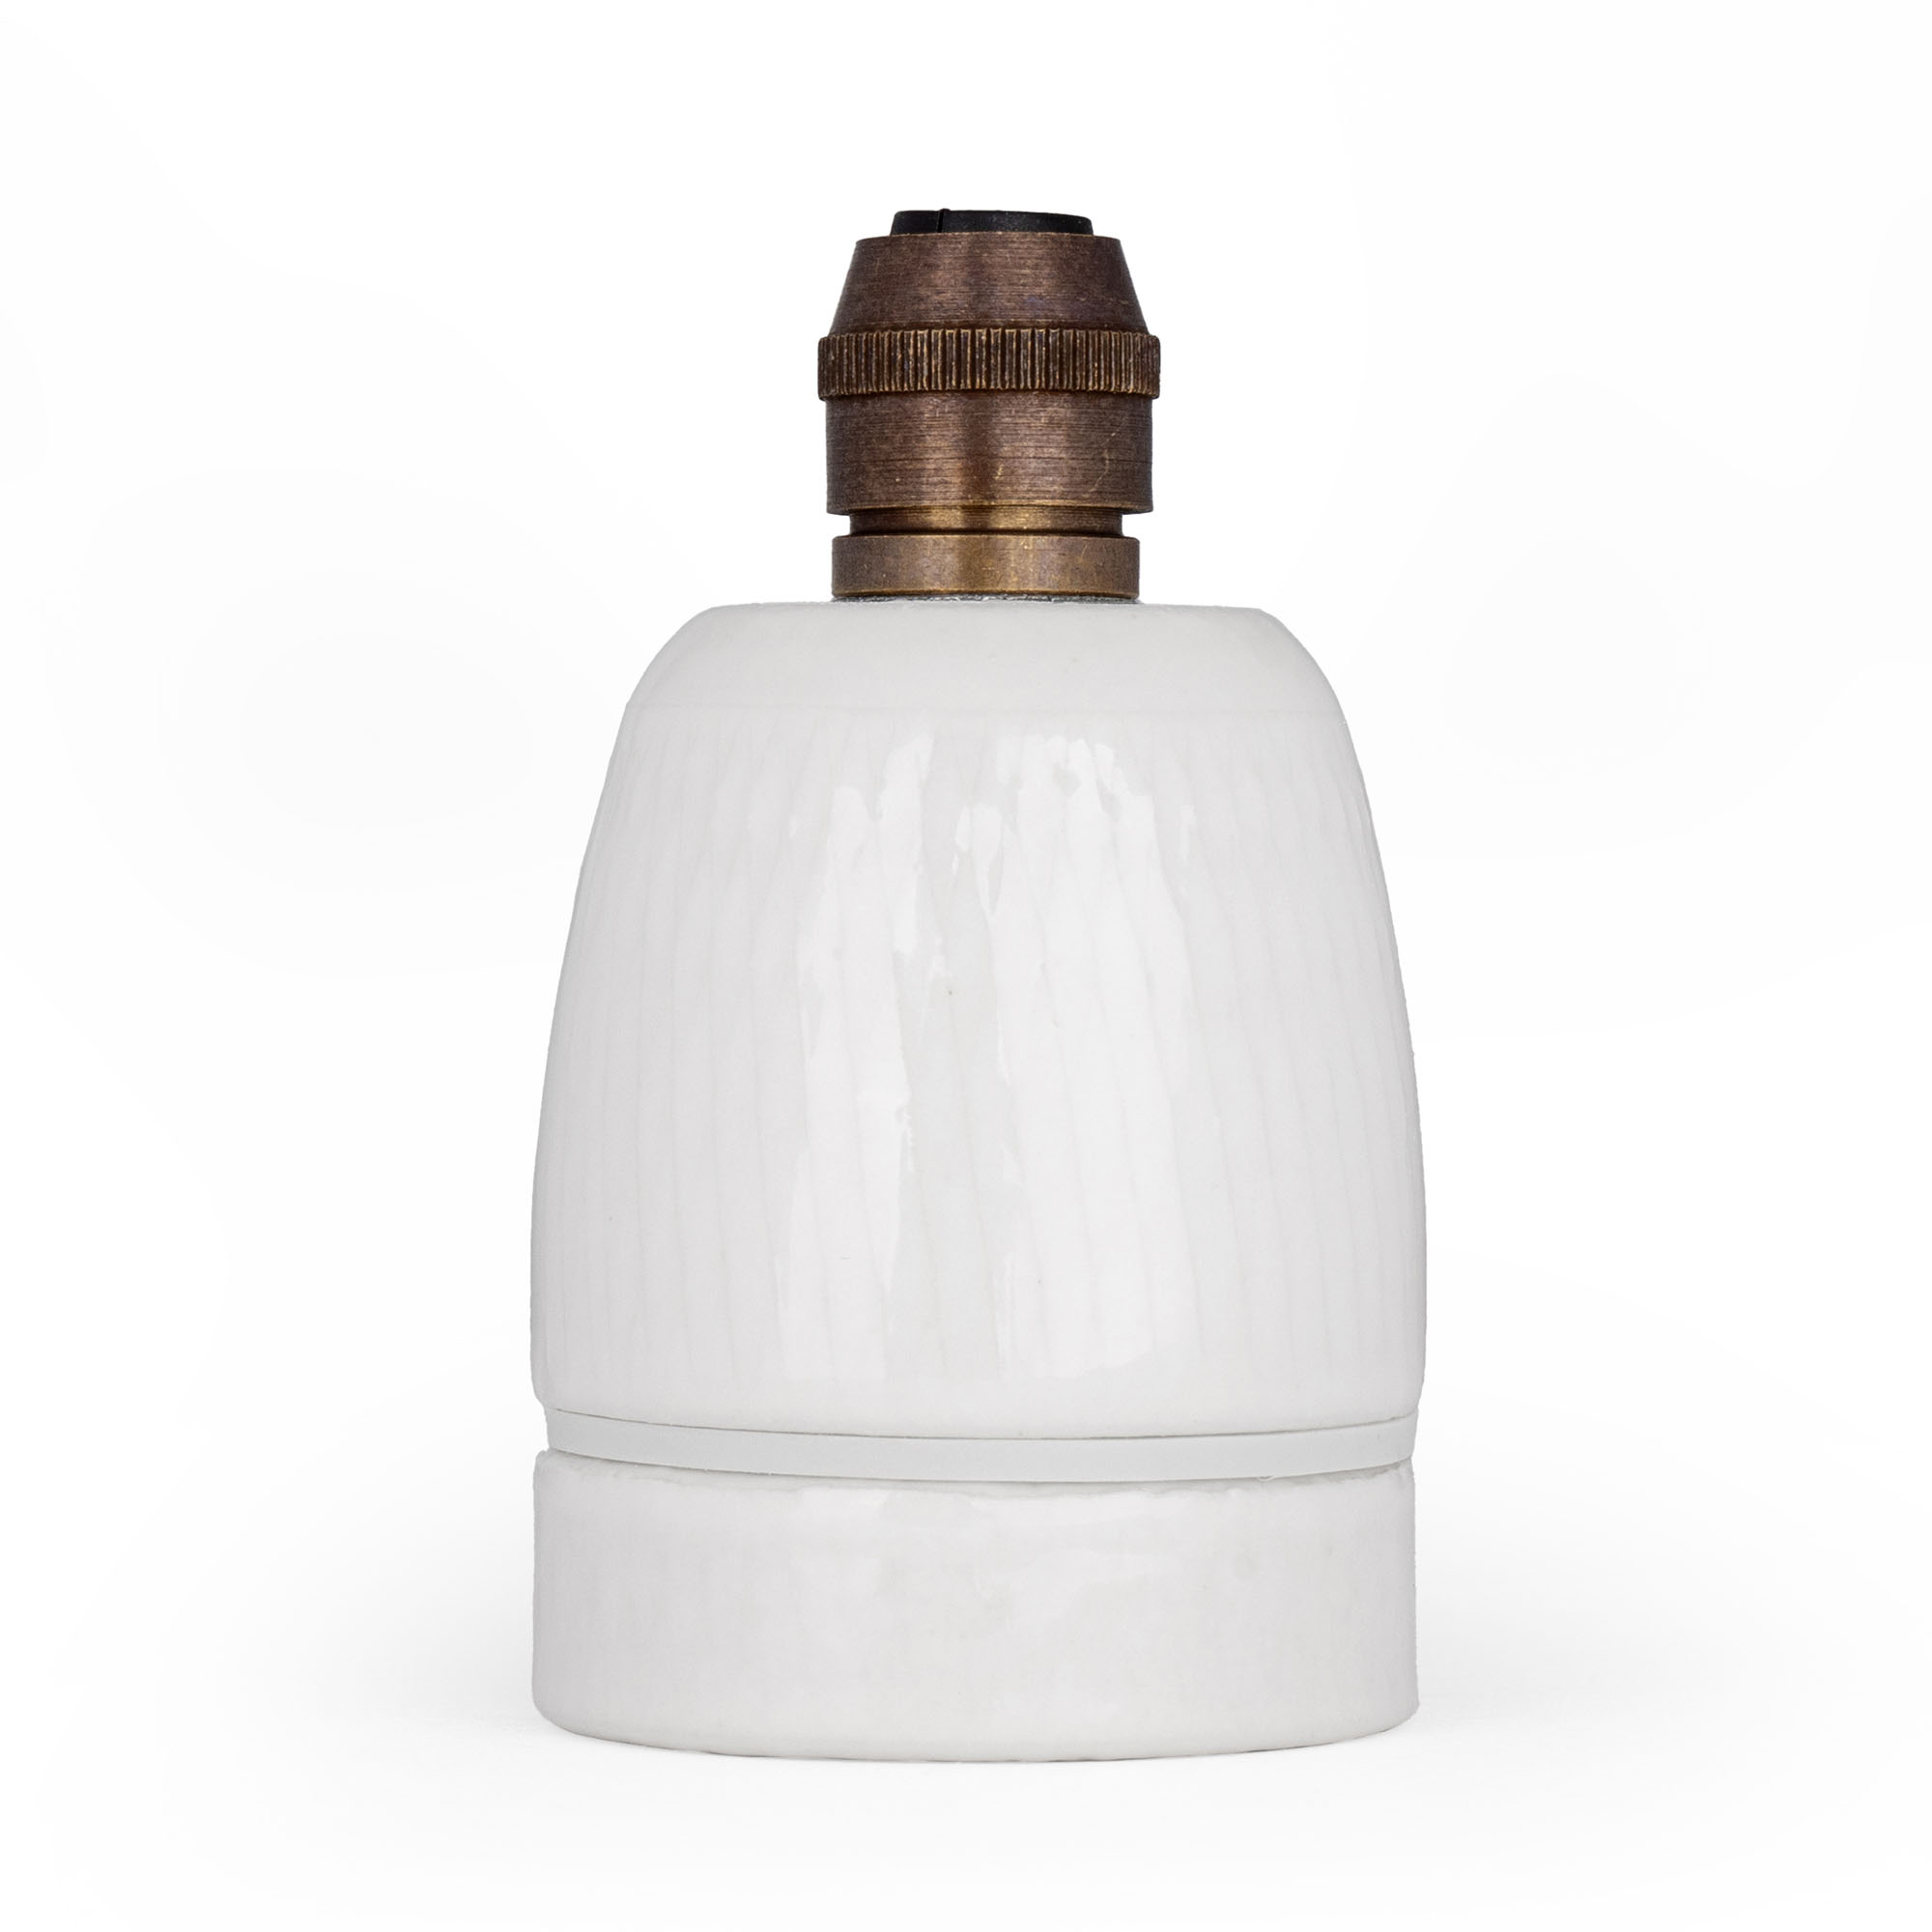 Porzellan-lampenhalter mit elektrischem e27-stil 007274sg